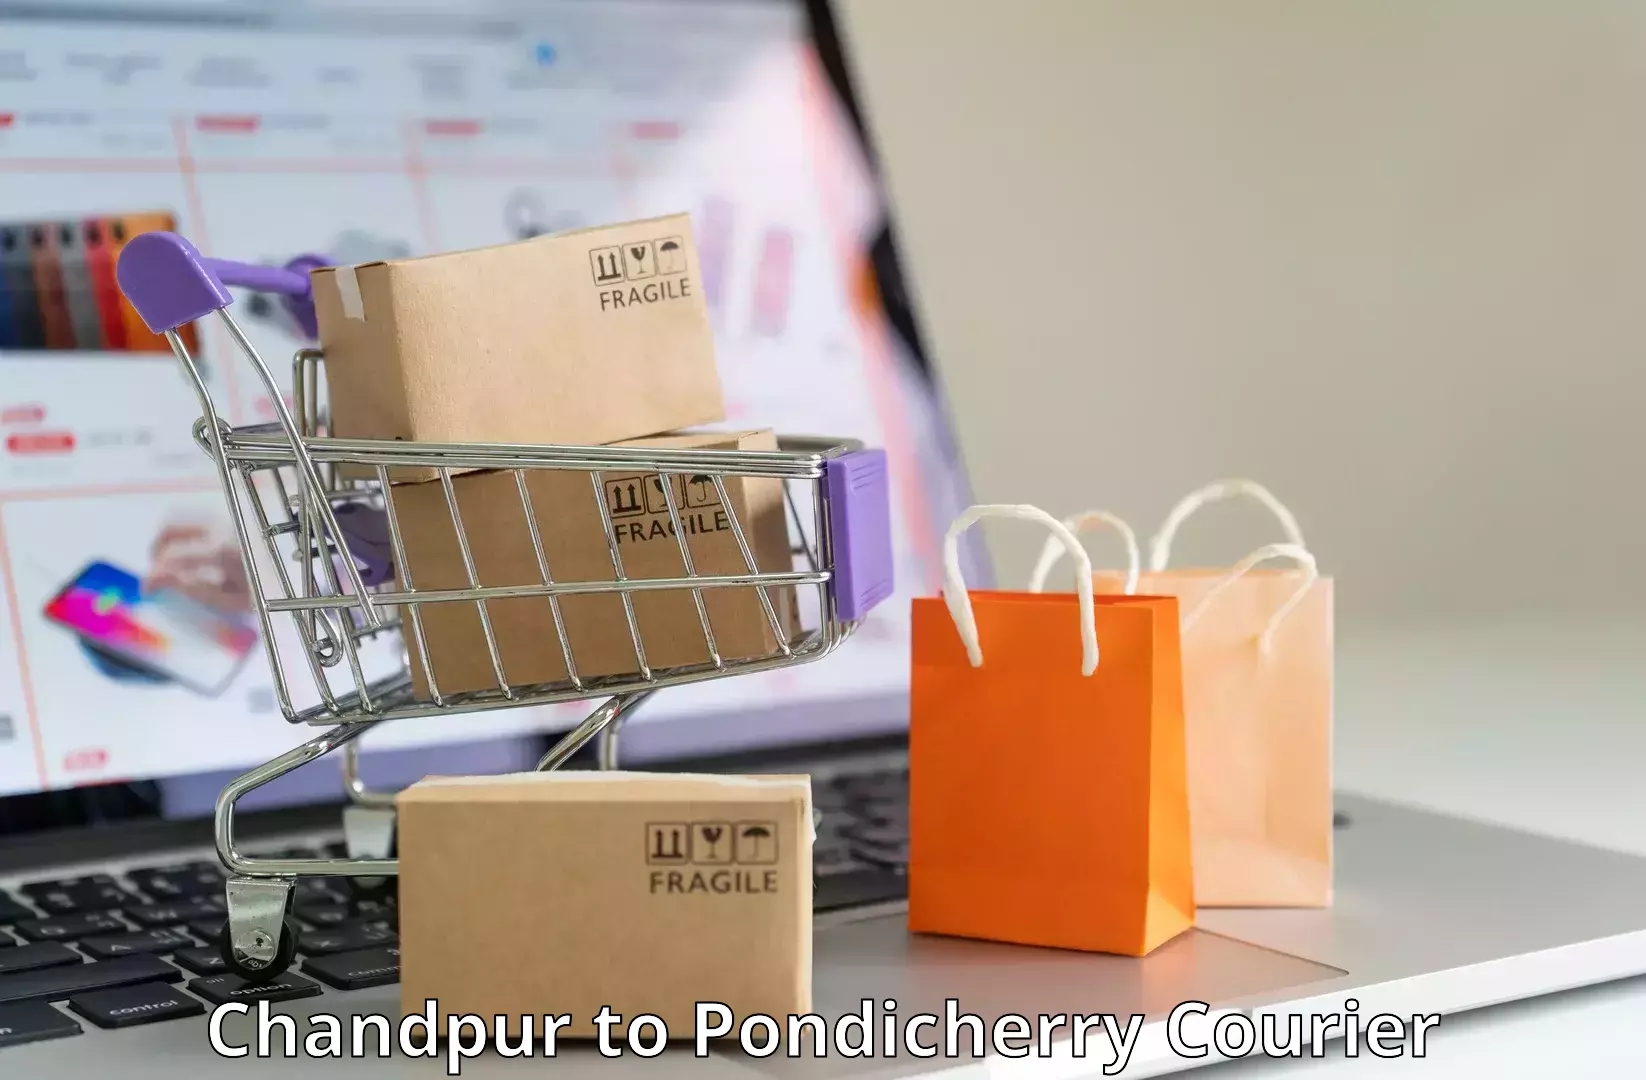 Return courier service Chandpur to Pondicherry